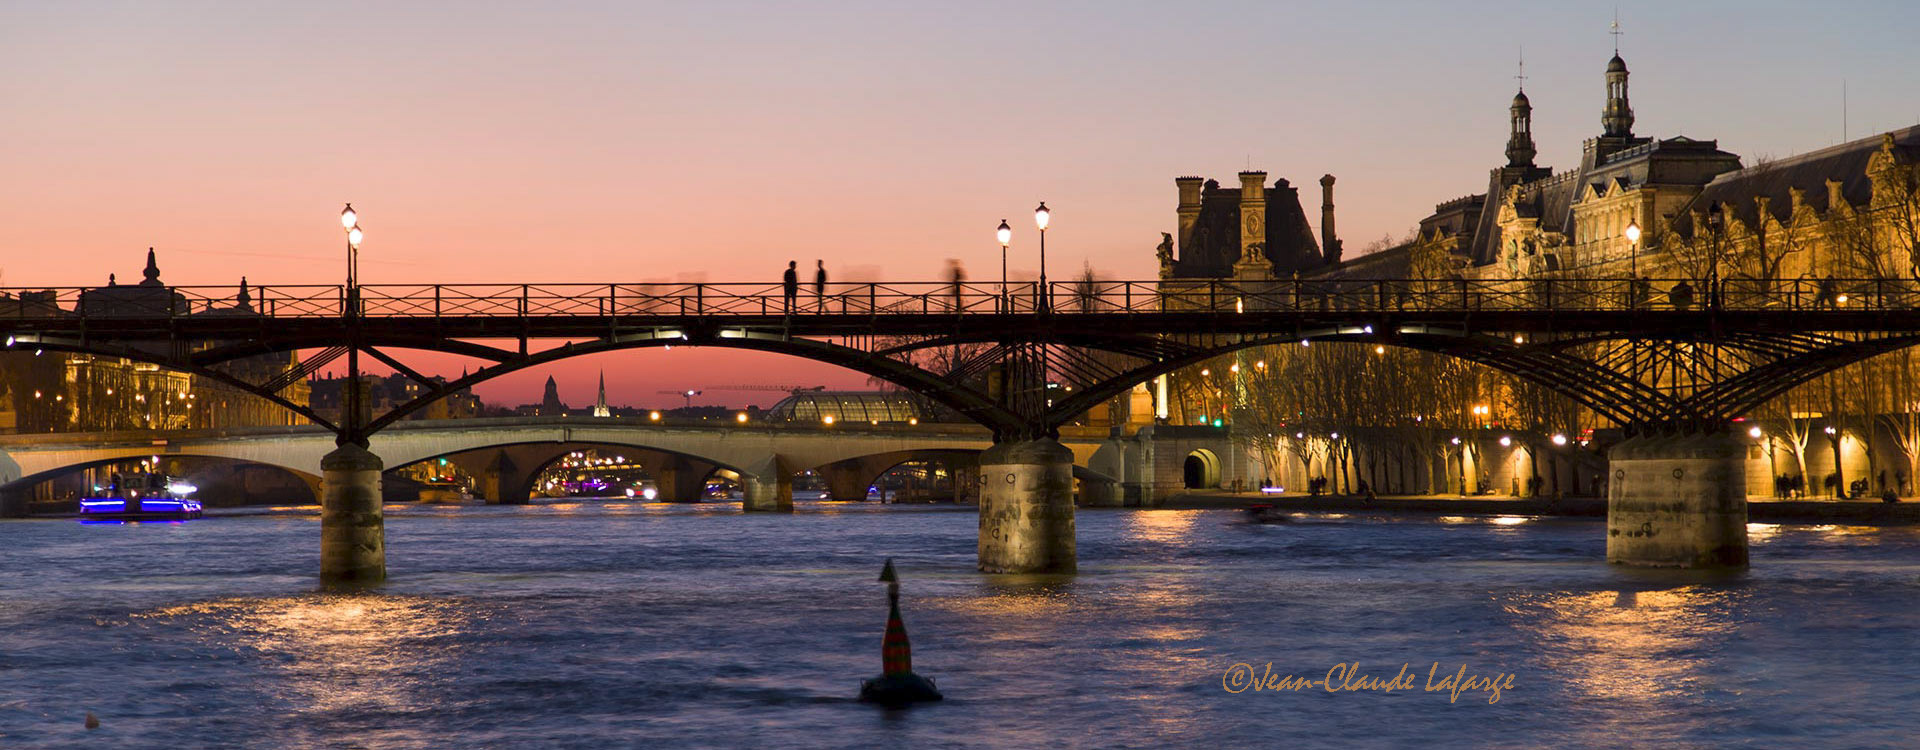 Pont des Arts de Paris à l'heure bleue